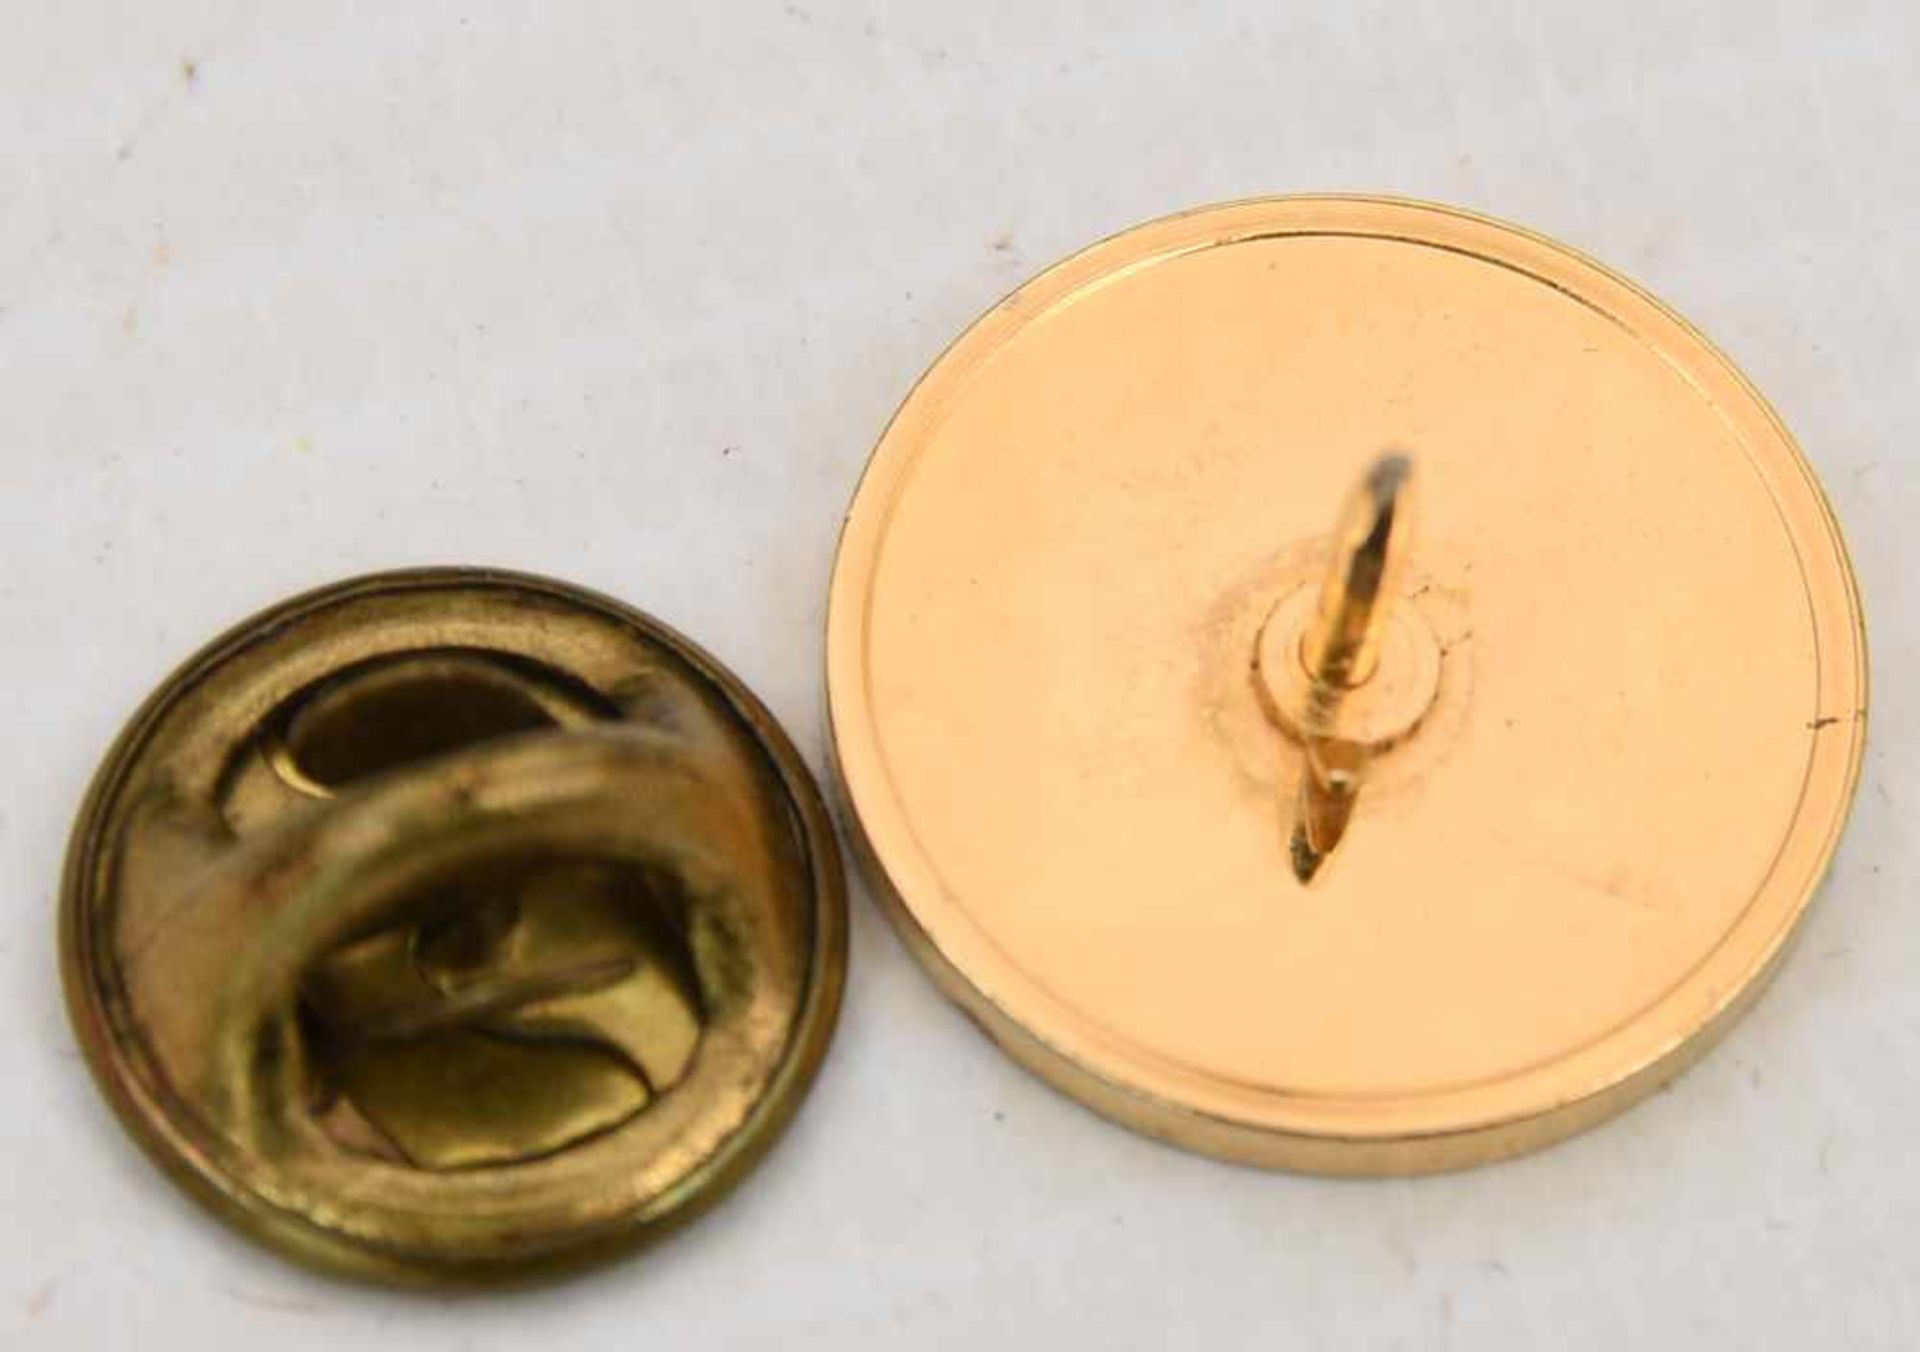 MÜNZANHÄNGER, Die kleinsten Goldmünzen der Welt, mit 14 Karat Kette, 20. Jhd. (13)1x Münzanhänger - Bild 4 aus 6